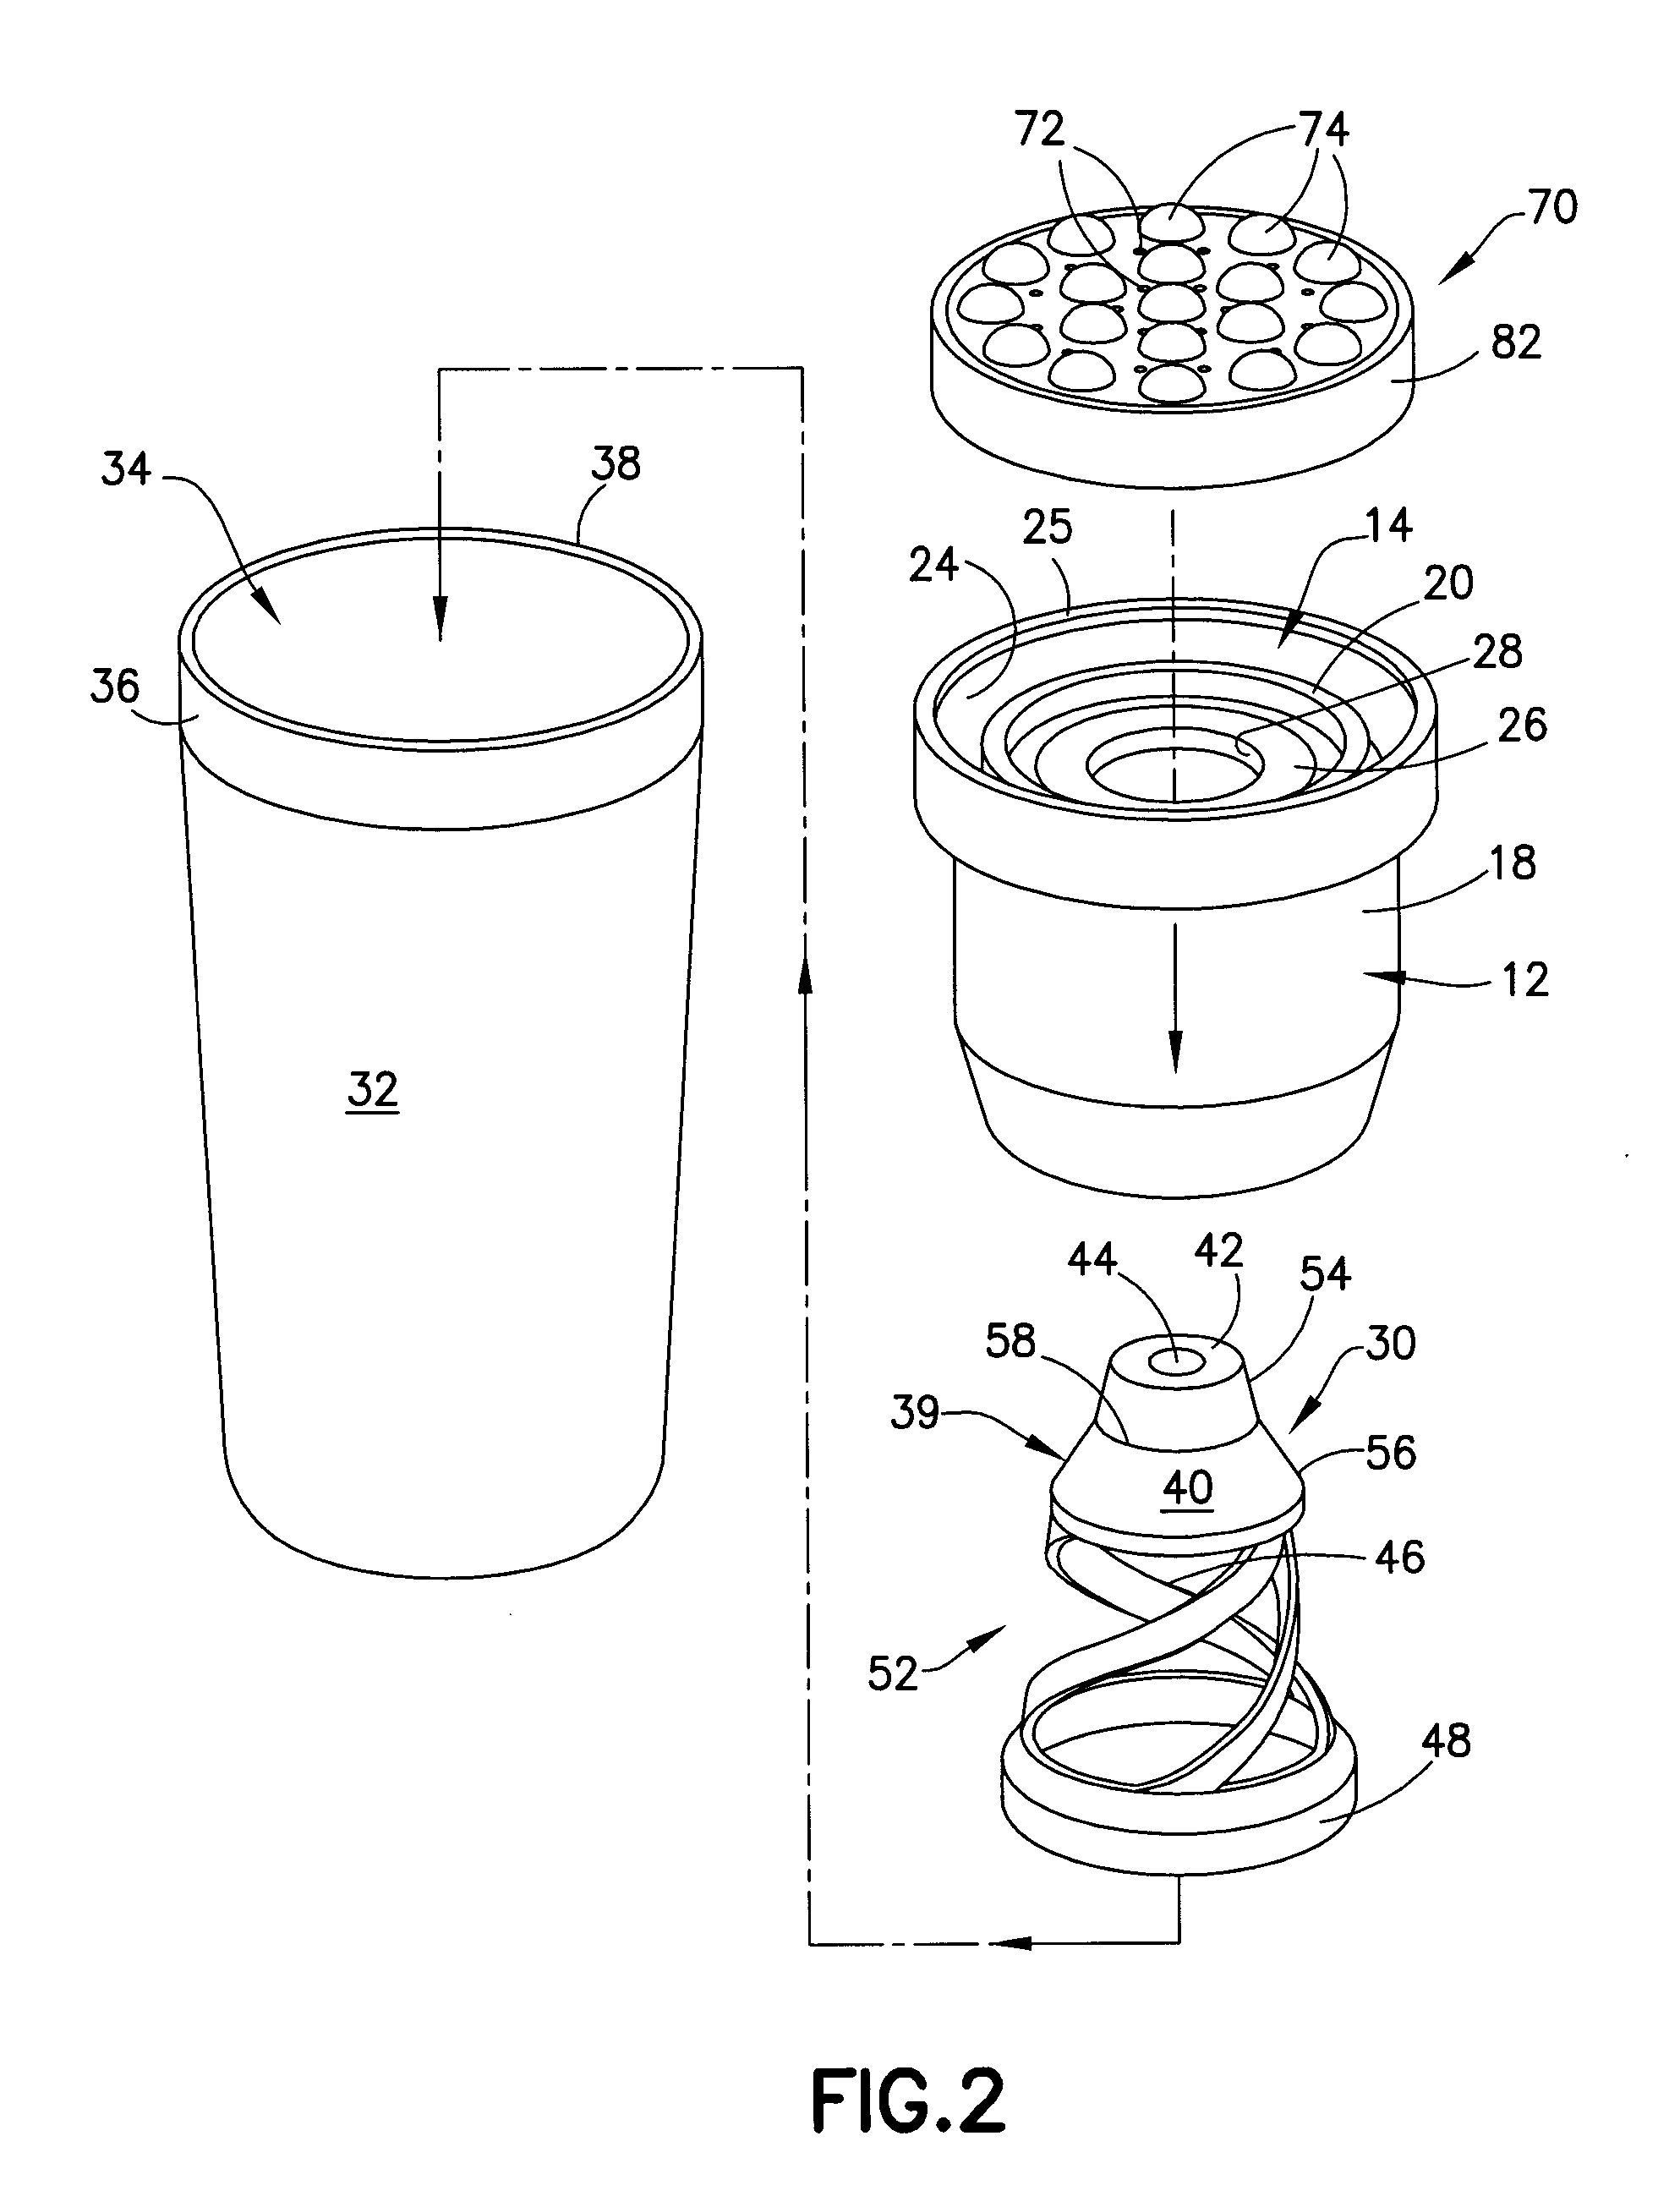 Leak-resistant liquid applicator